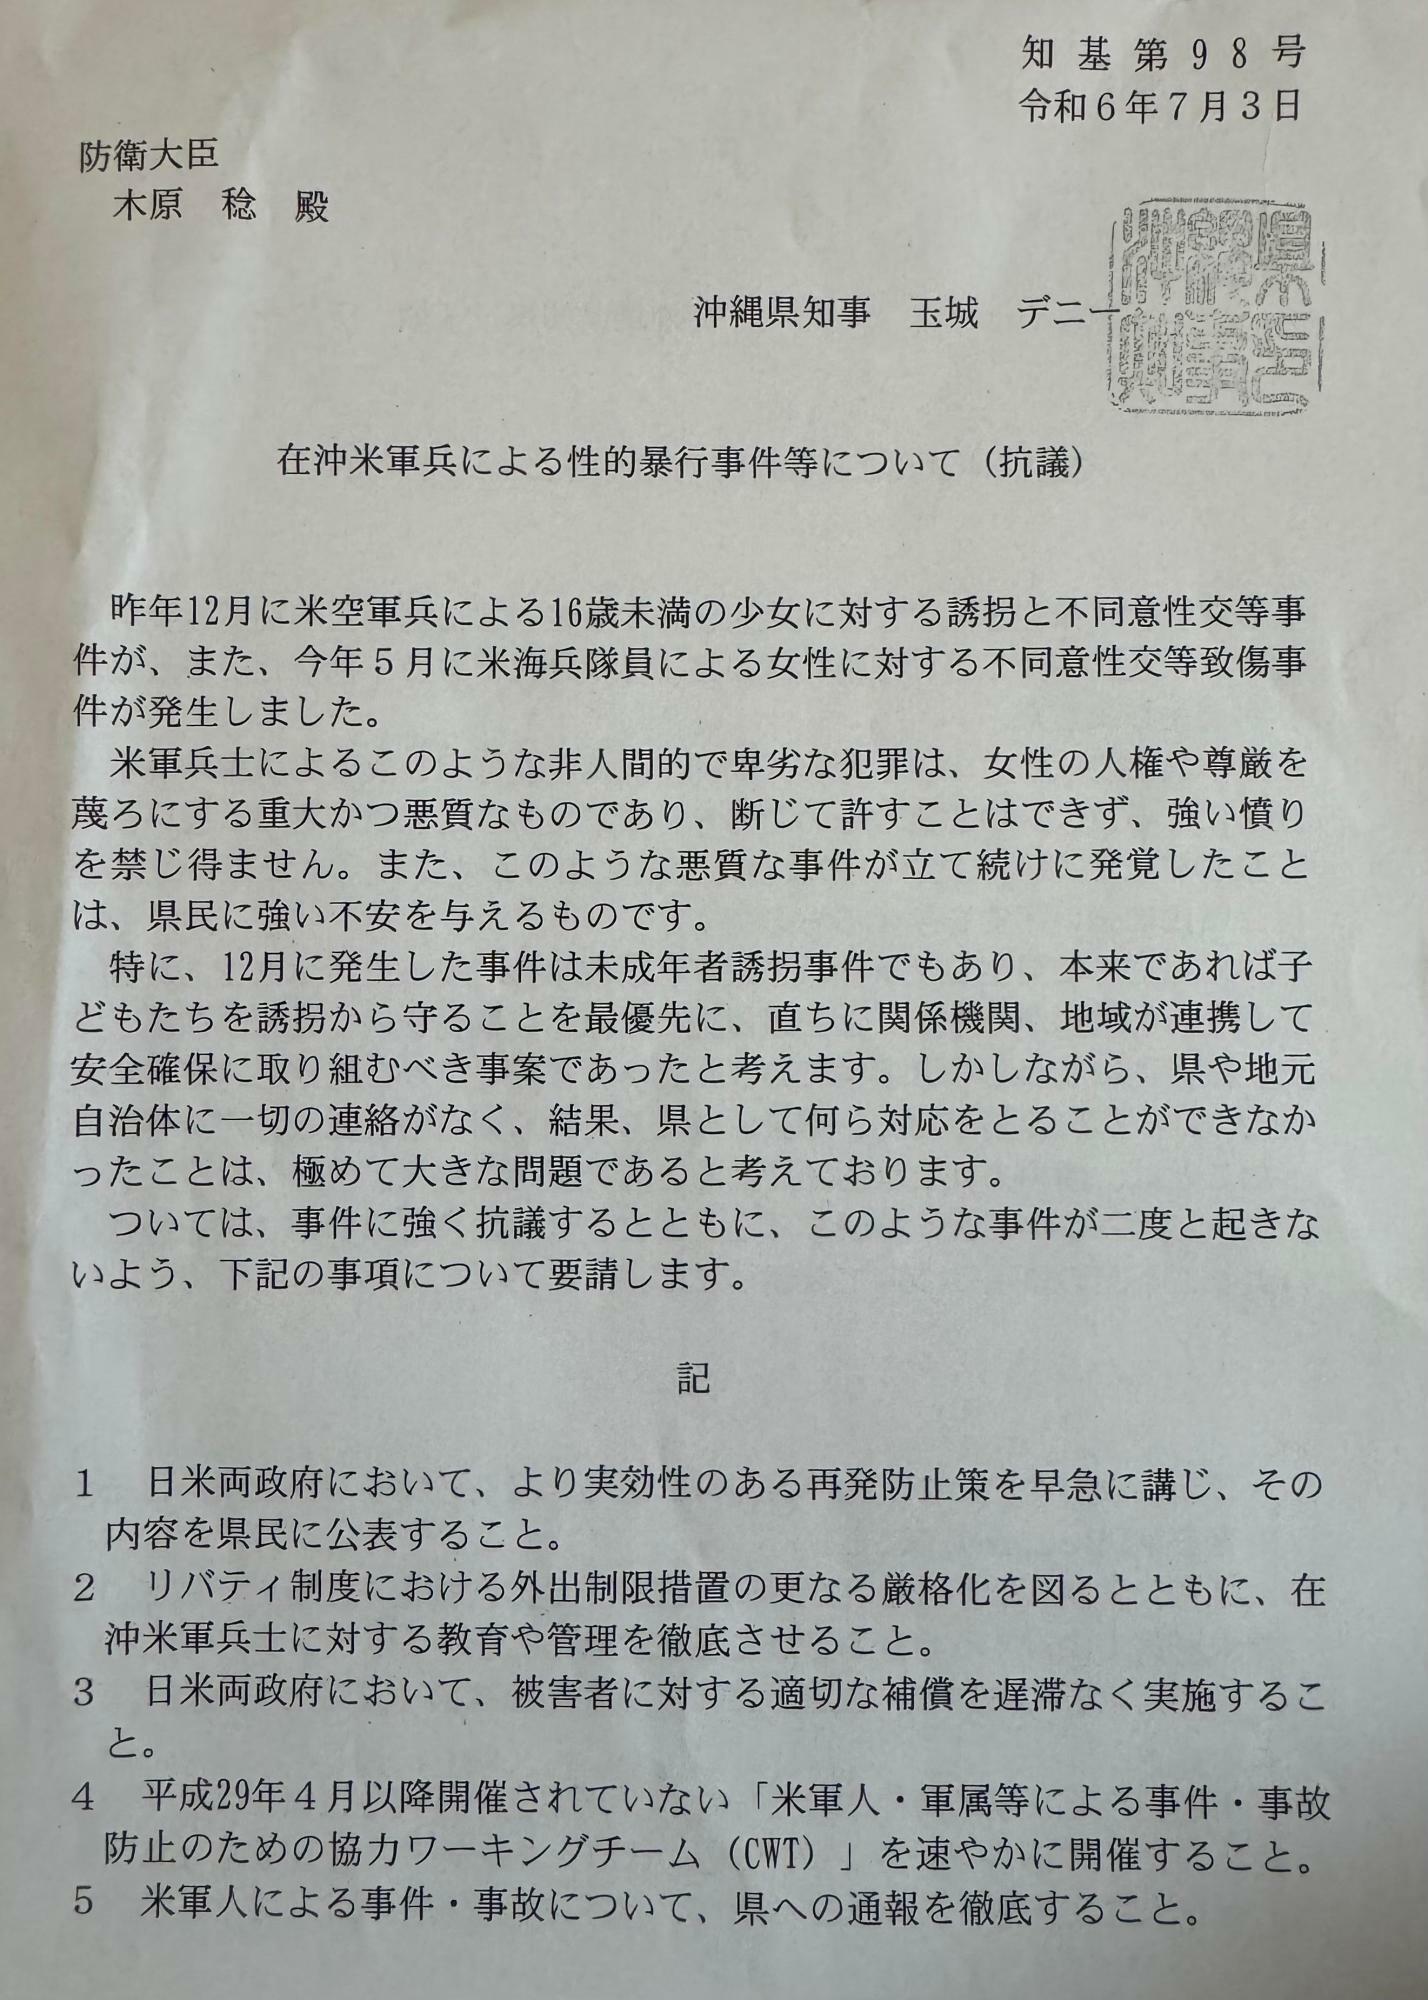 米兵による女性暴行事件を受け、沖縄県の玉城デニー知事が防衛省に手渡した抗議要請文のコピー（筆者撮影）